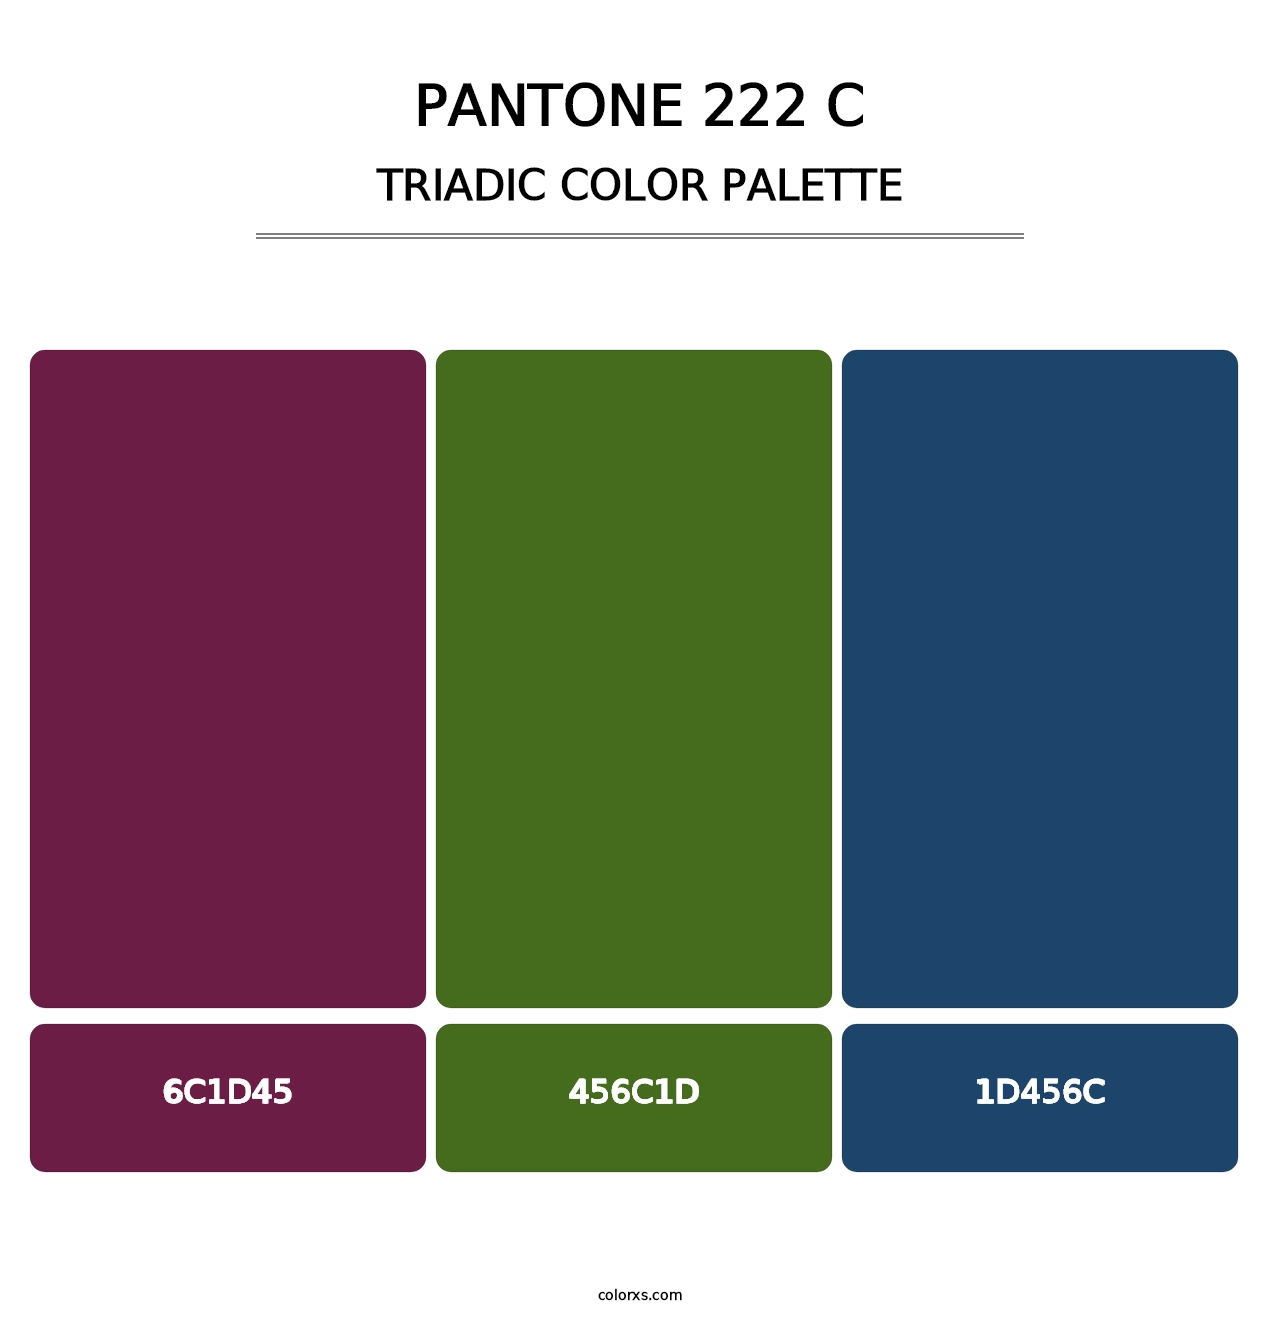 PANTONE 222 C - Triadic Color Palette